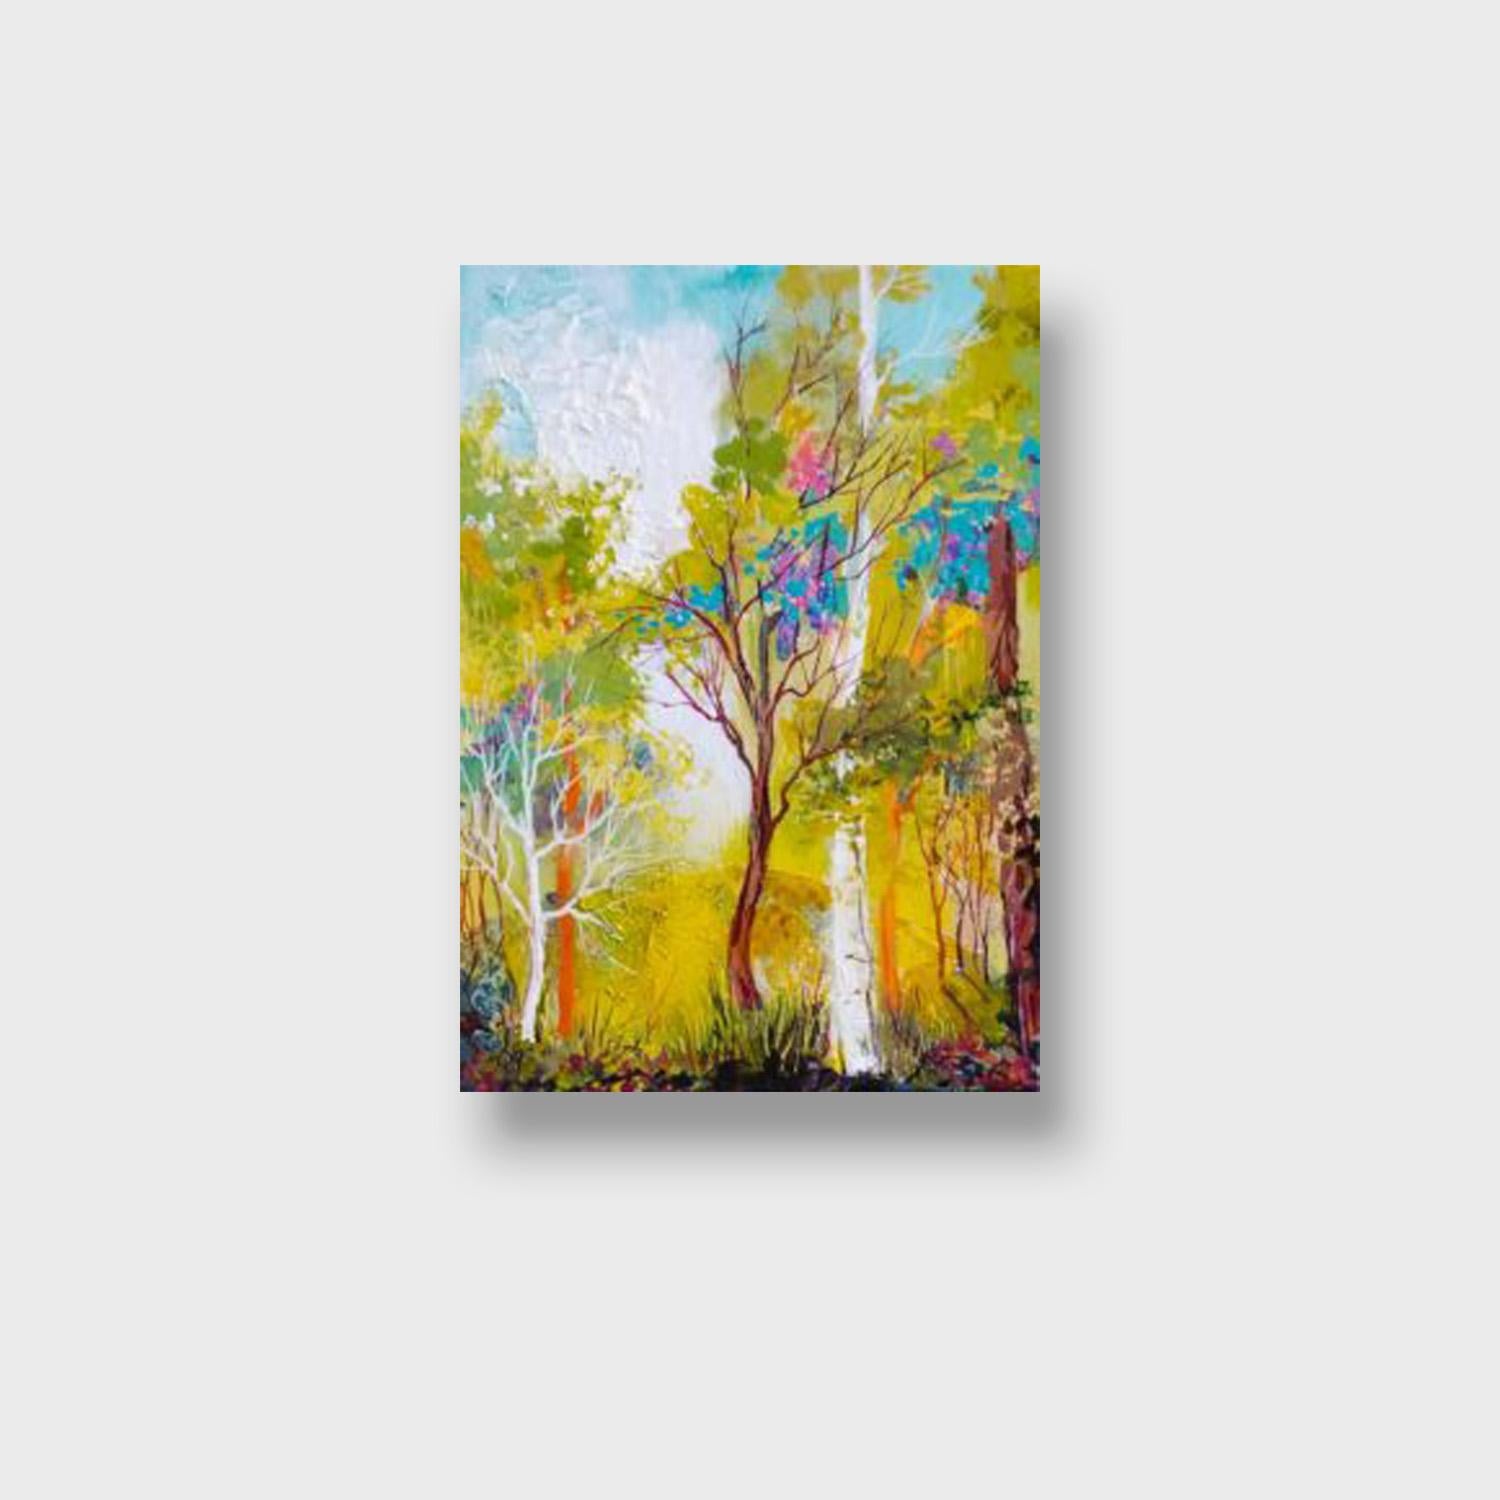 Peinture de paysage expressionniste, « If Not Spring » (Si non le printemps) - Painting de Sherry Beaton-Krulle